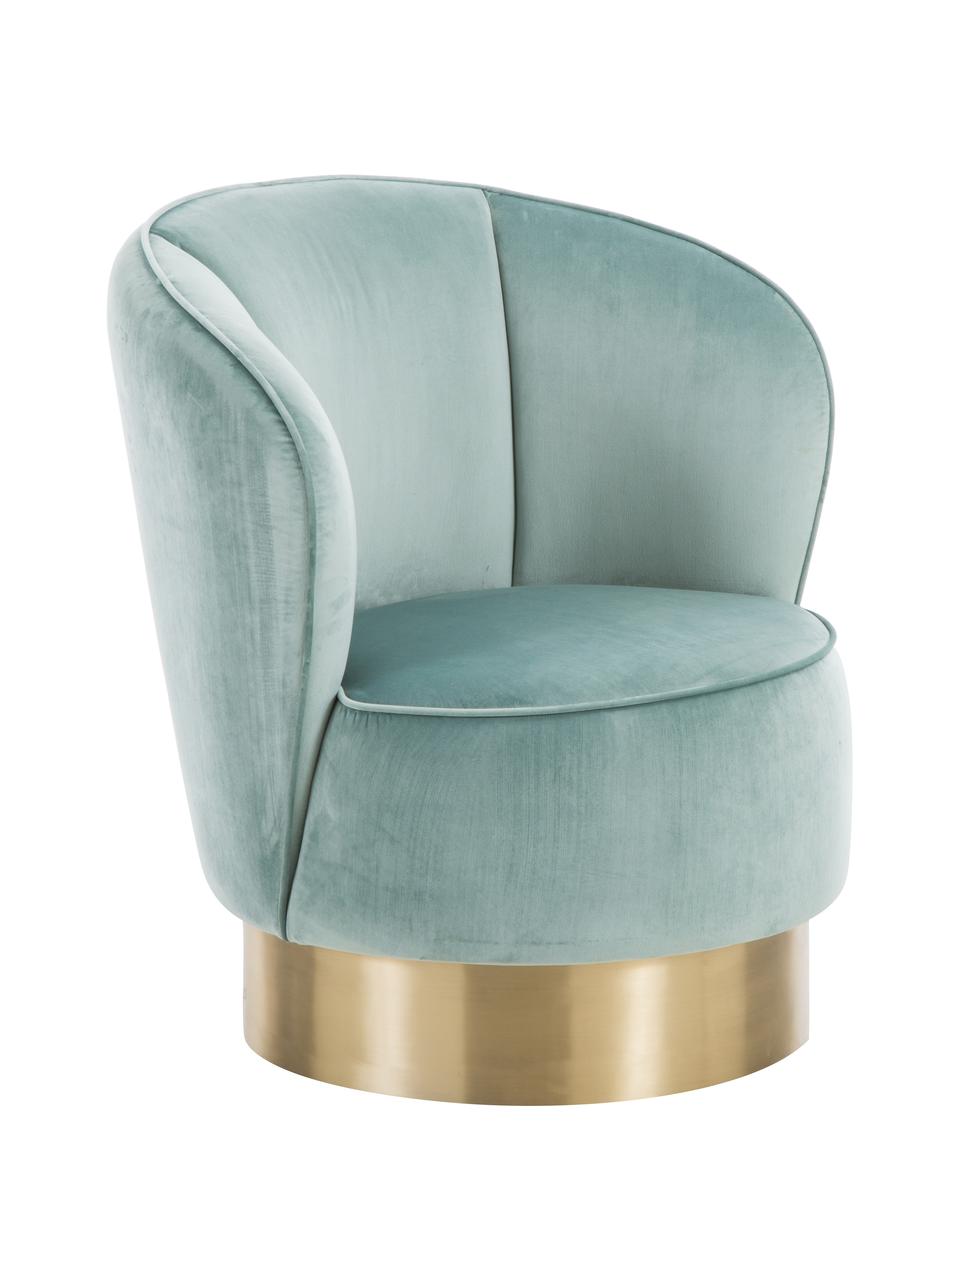 Fluwelen fauteuil Olivia in saliekleur, Bekleding: fluweel (polyester), Voet: gecoat metaal, Fluweel saliekleurig, B 70 x D 70 cm